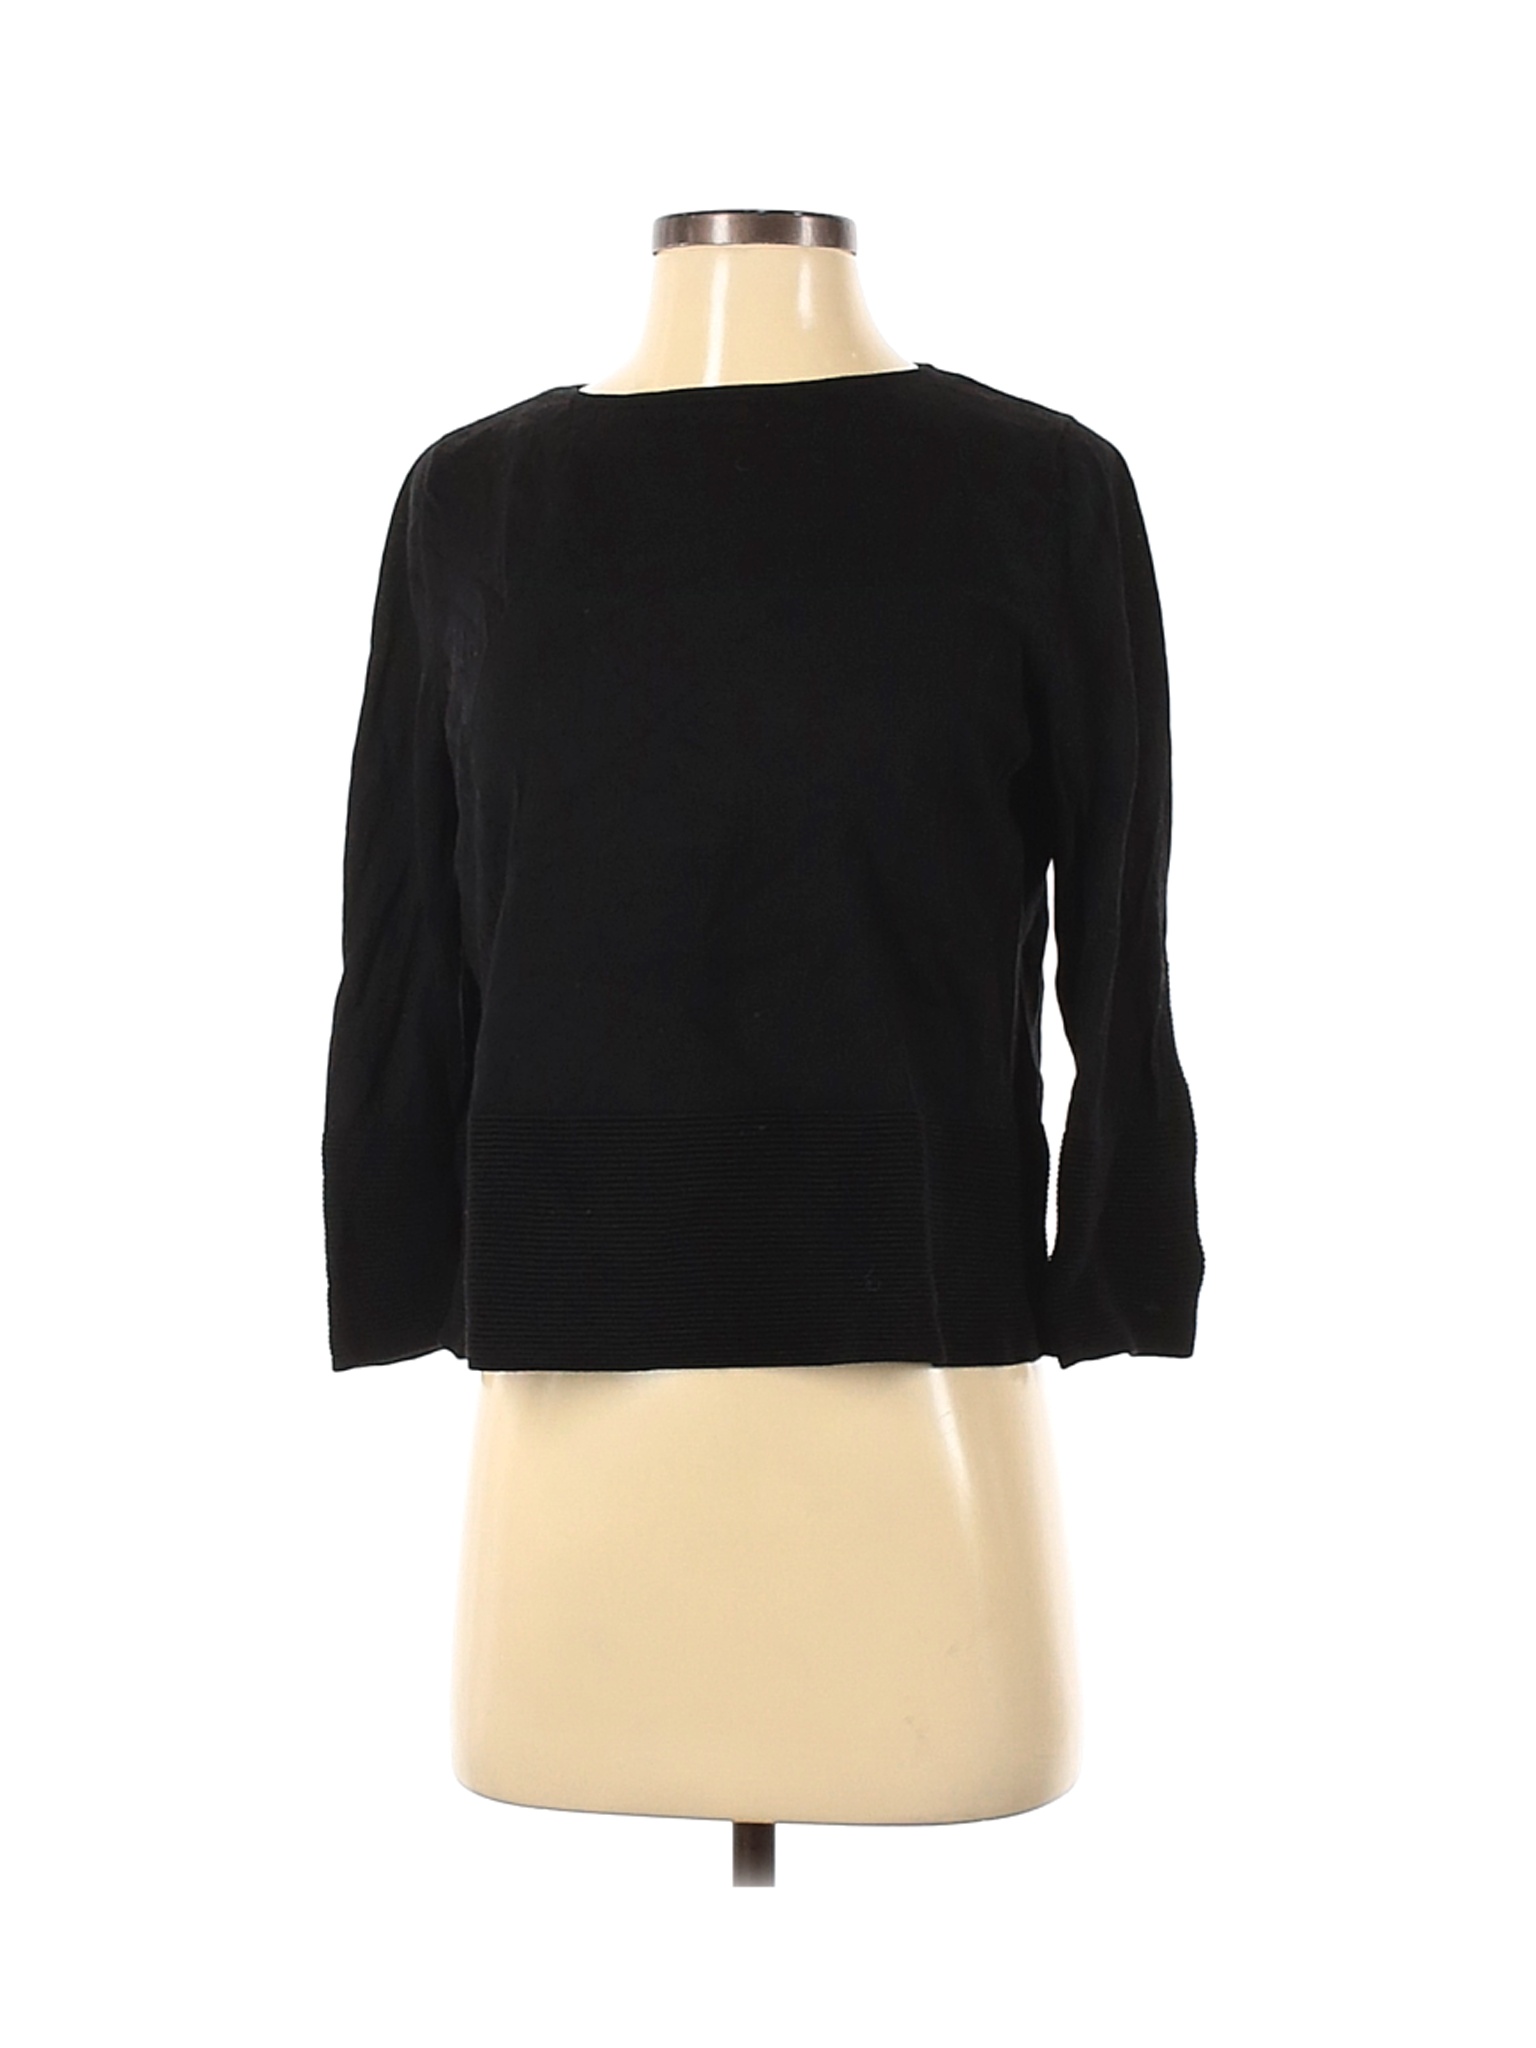 Cos Women Black Long Sleeve Top S | eBay